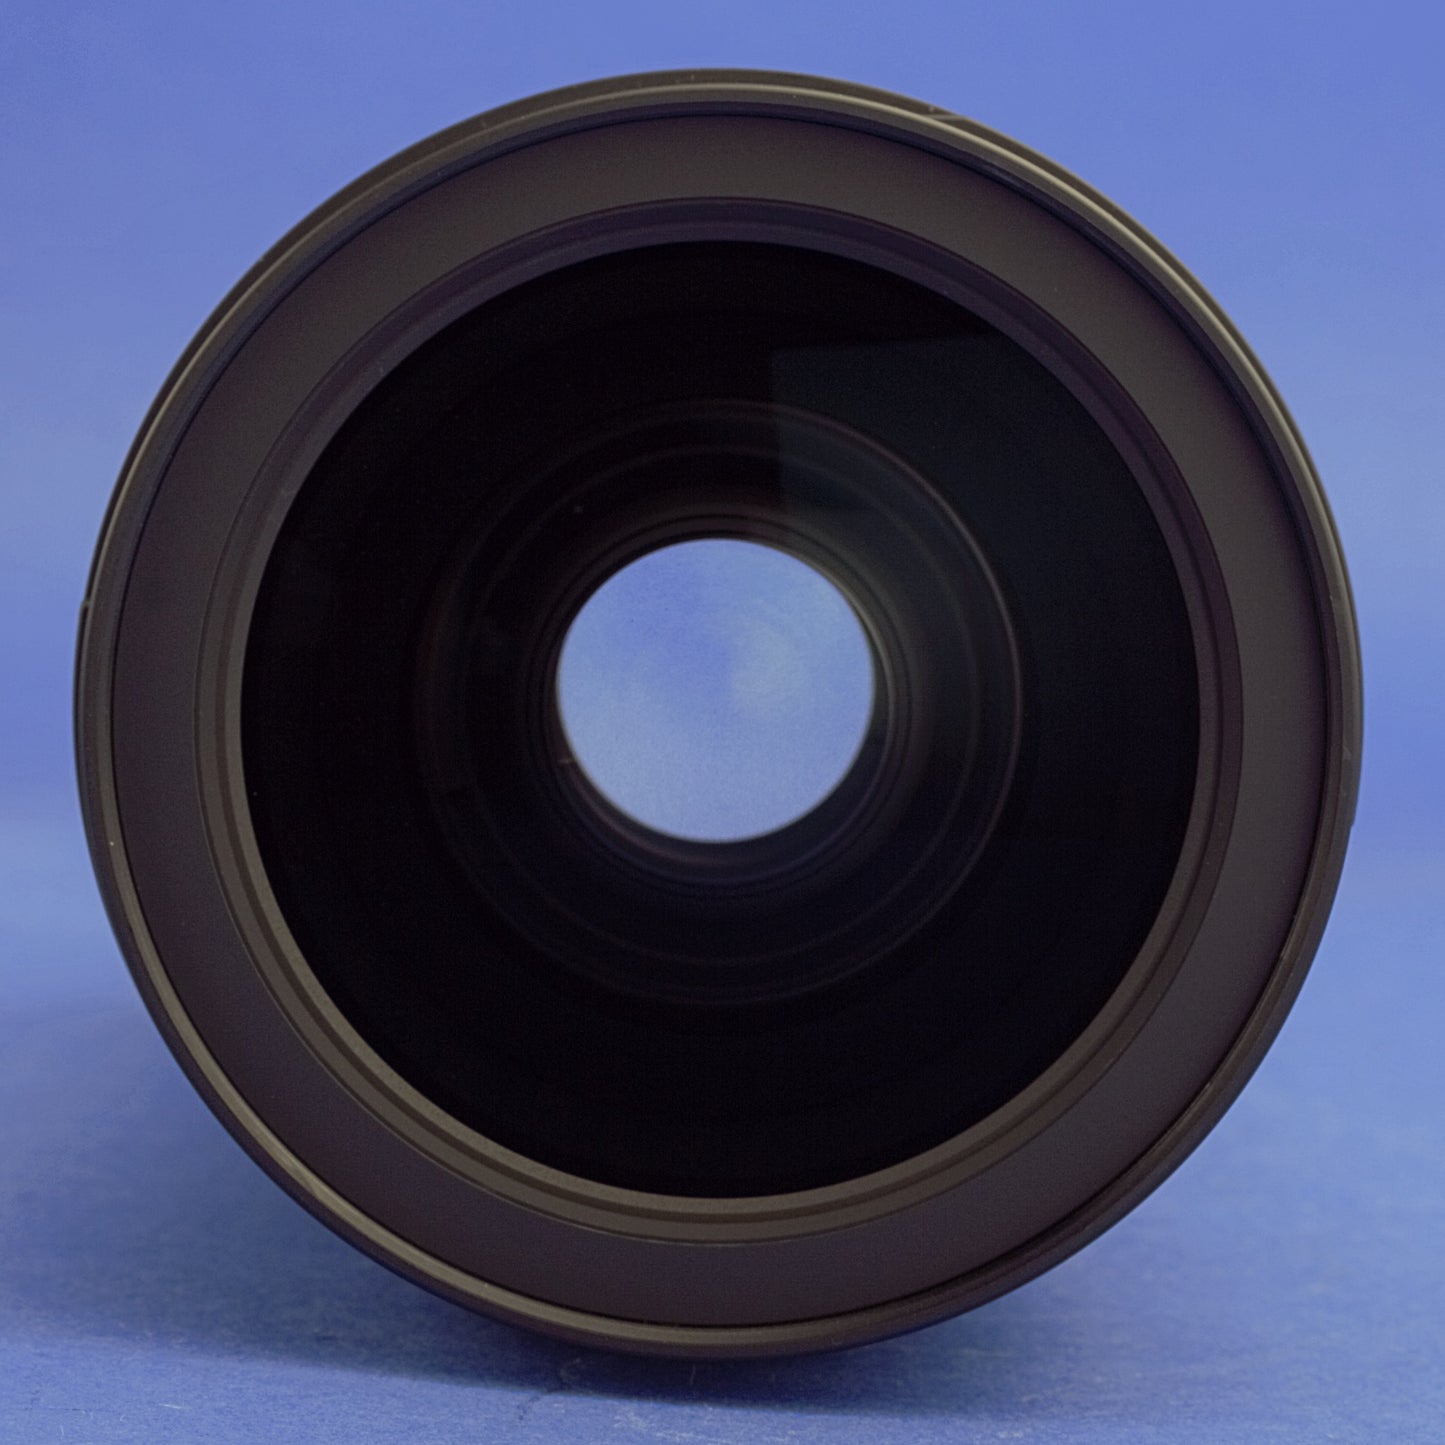 Nikon AF-S Nikkor 24-70mm 2.8E VR Lens Mint Condition